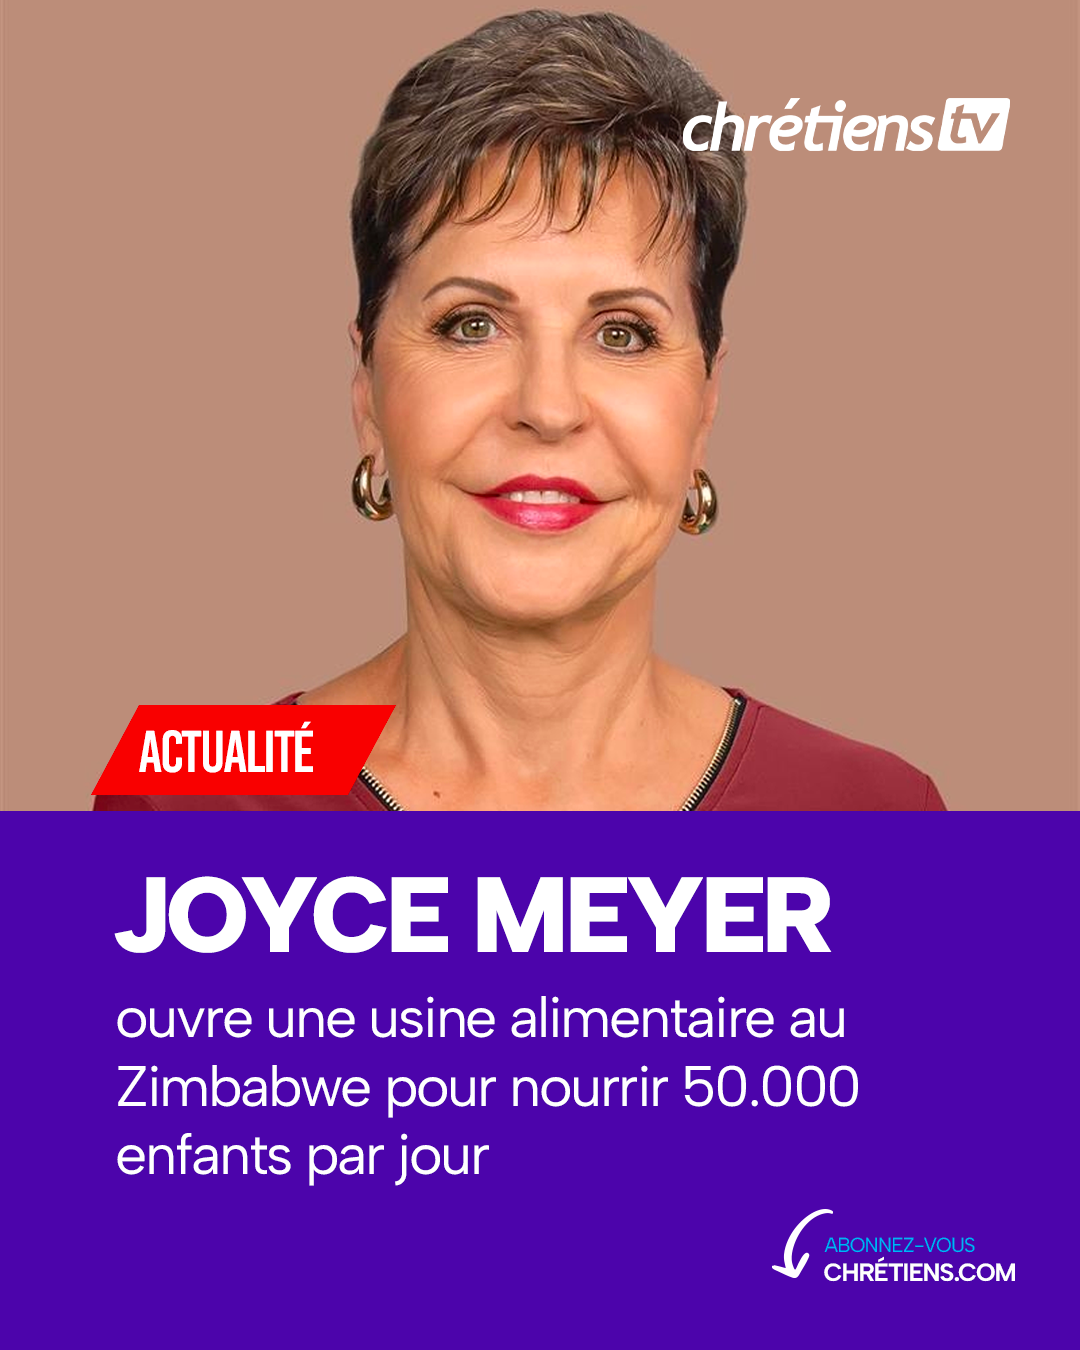 L’évangéliste américaine Joyce Meyer a récemment inauguré une usine alimentaire au Zimbabwe, une initiative qui permettra de nourrir plus de 50.000 enfants chaque jour.